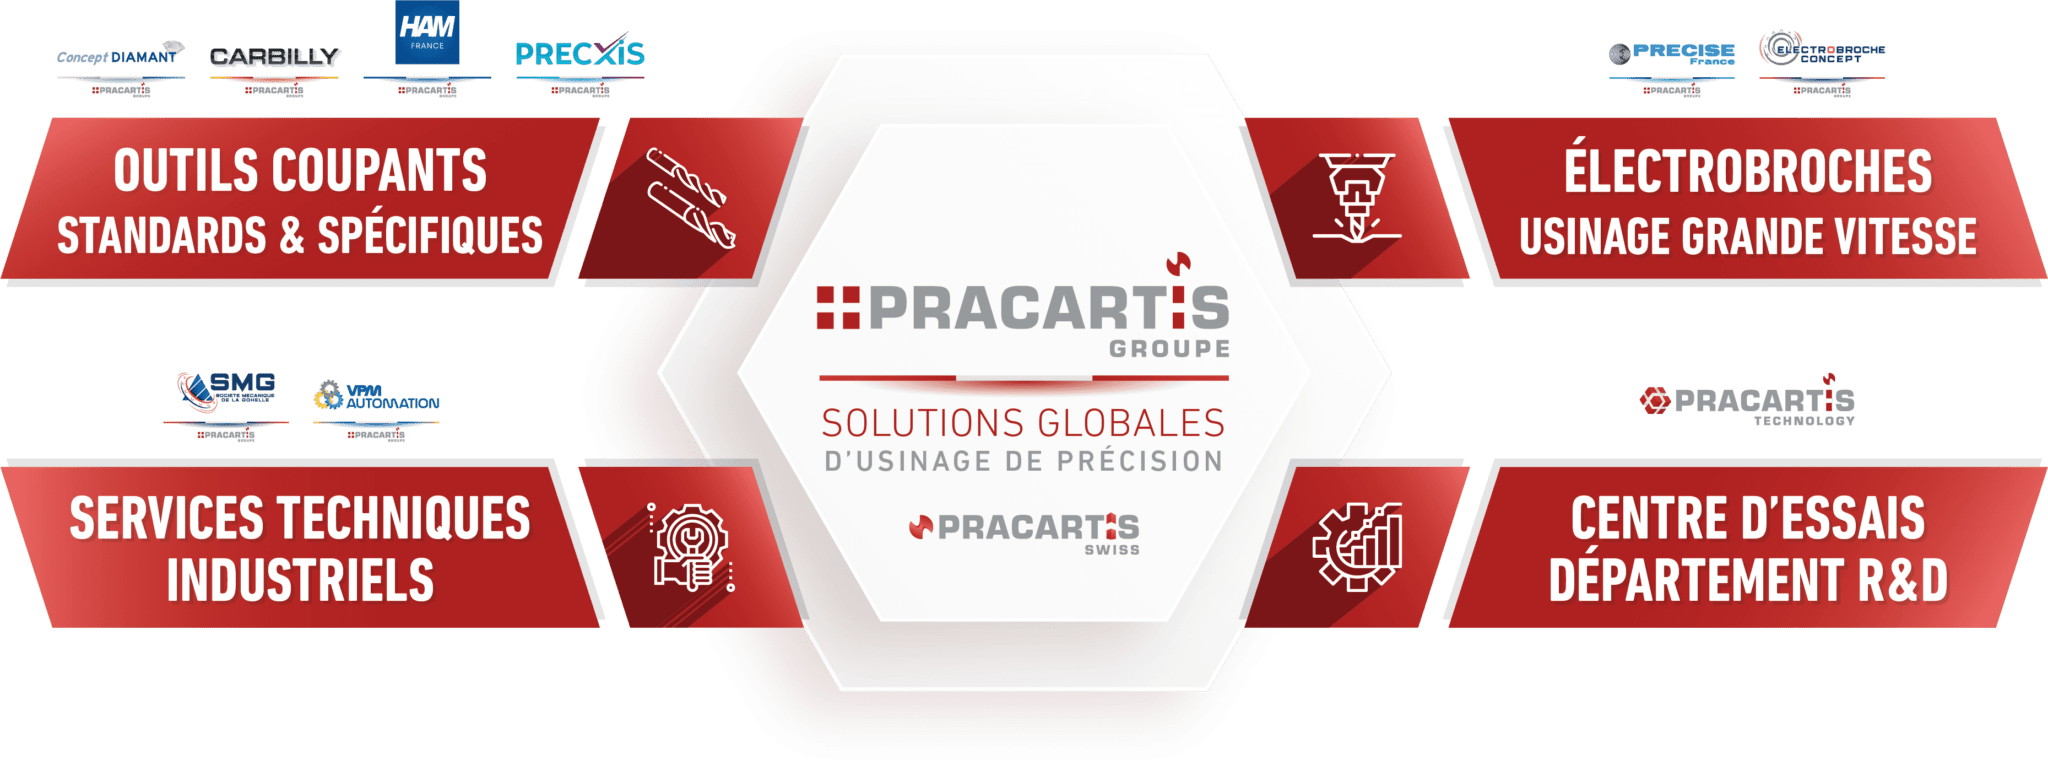 PRACARTIS Groupe - Outils coupants - Electrobroches UGV - Services techniques industriels - Centre d'essais & recherche